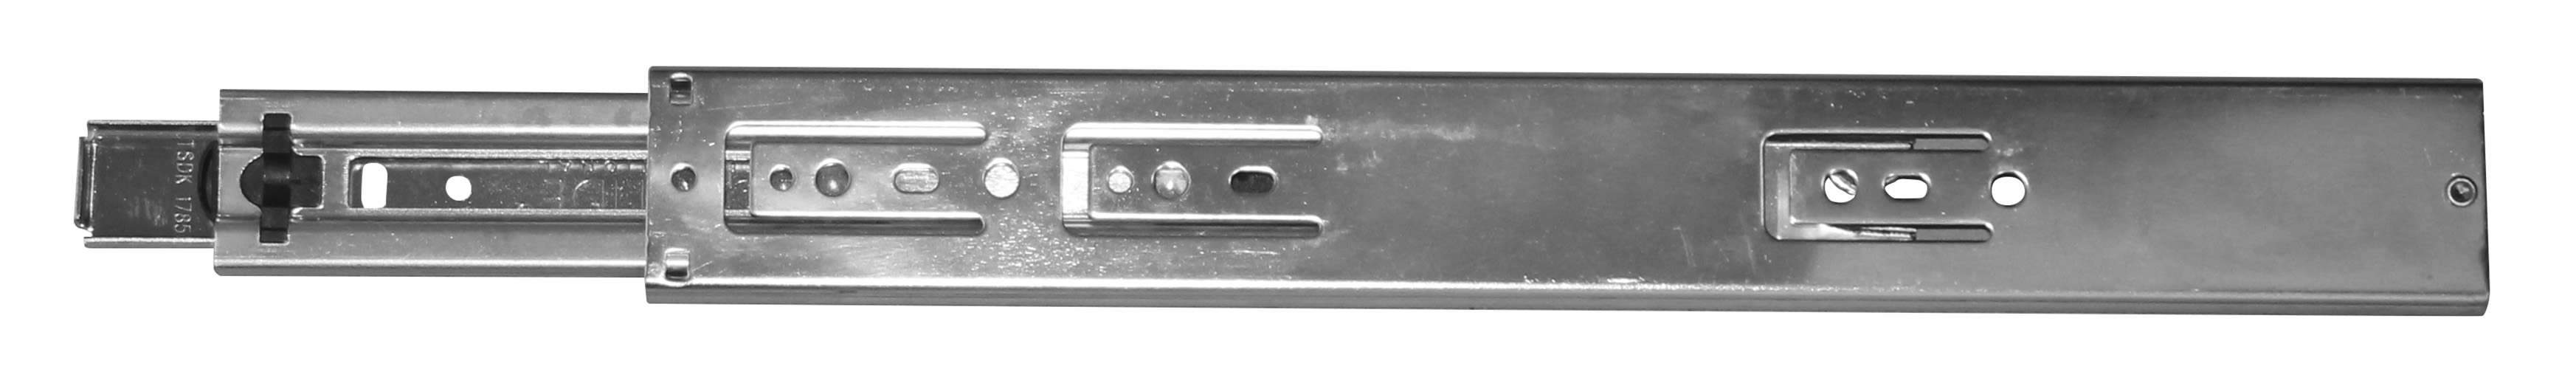 HSI Schubladenführung vern. 46x350/365 mm Kugel-Vollauszug, lose mit EAN